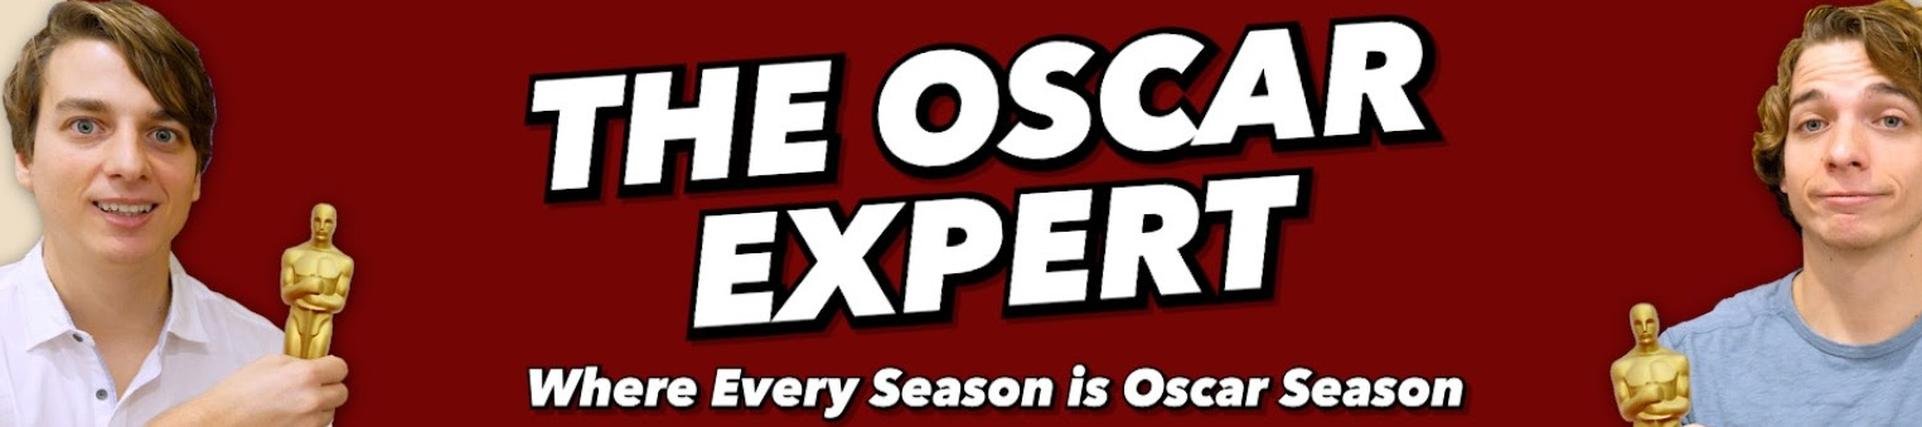 The Oscar Expert